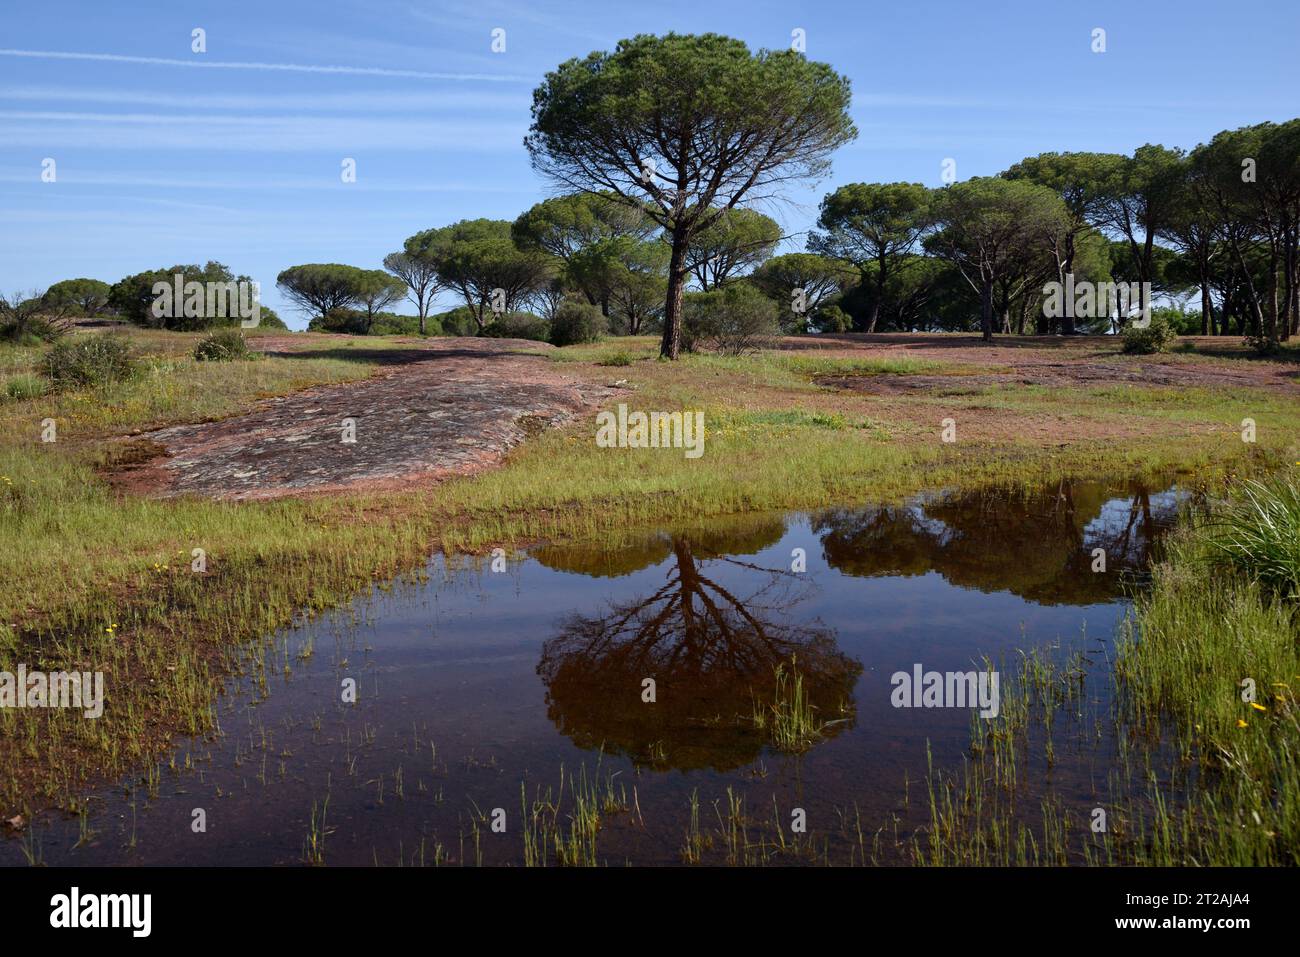 Steinkiefern auch bekannt als Umbrella Pines Pinus pinea, reflektiert in einem Pool oder Teich auf der Plaine des Maures, oder Maures Plain, Naturschutzgebiet Var Provence Frankreich Stockfoto